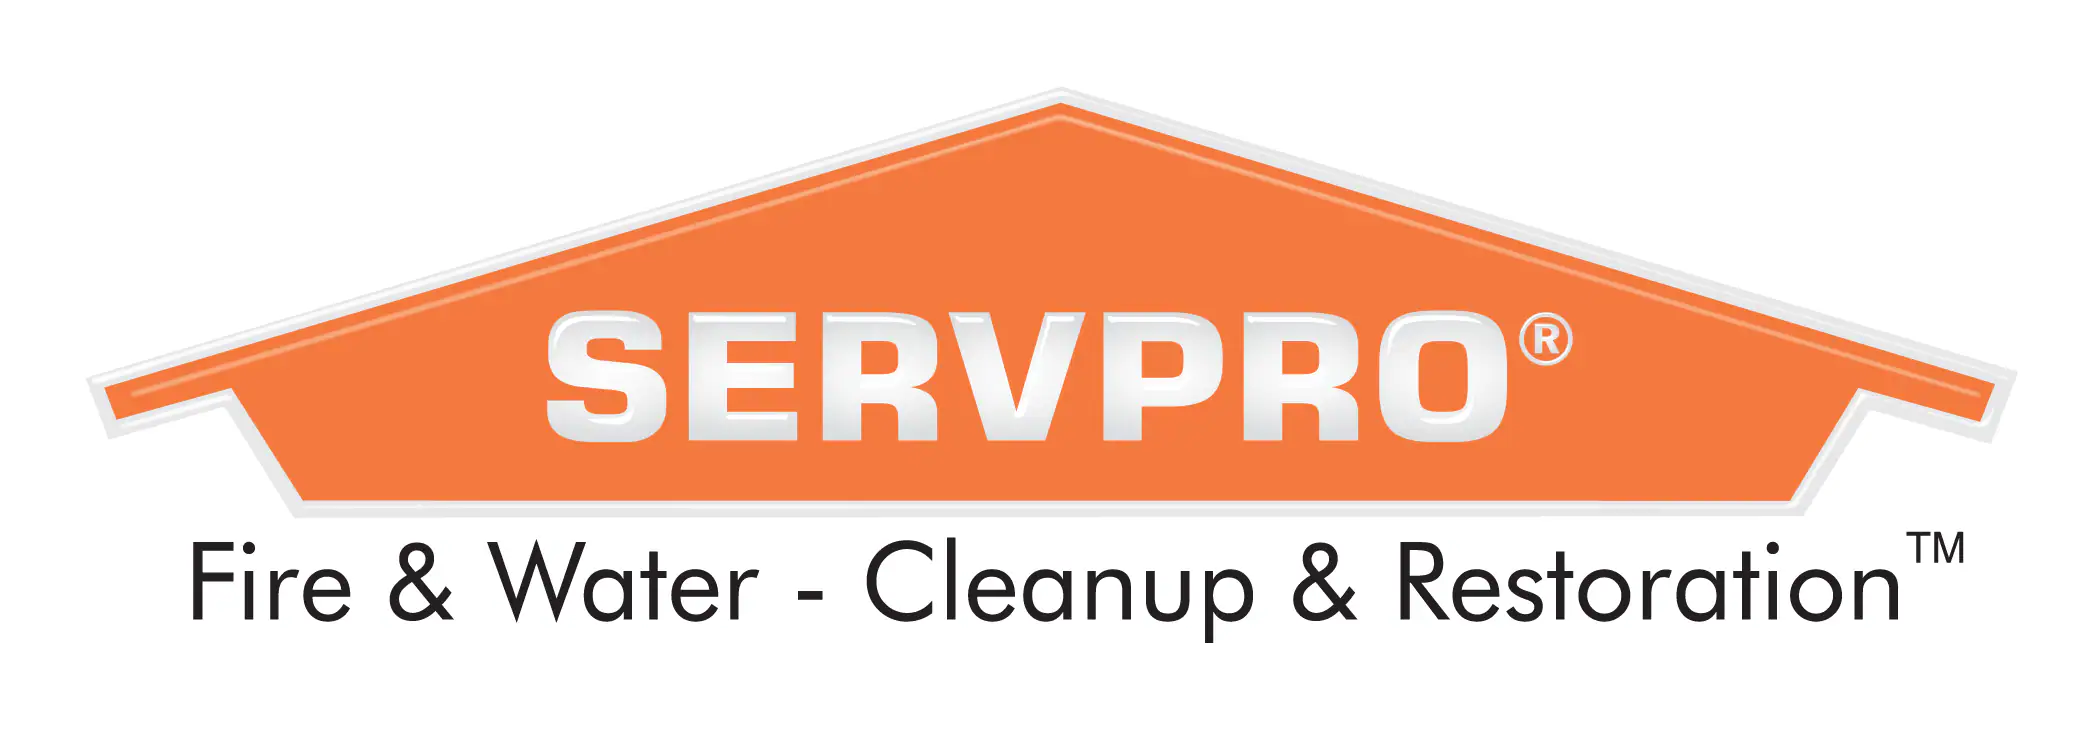 ServPro Cleanup & Restoration